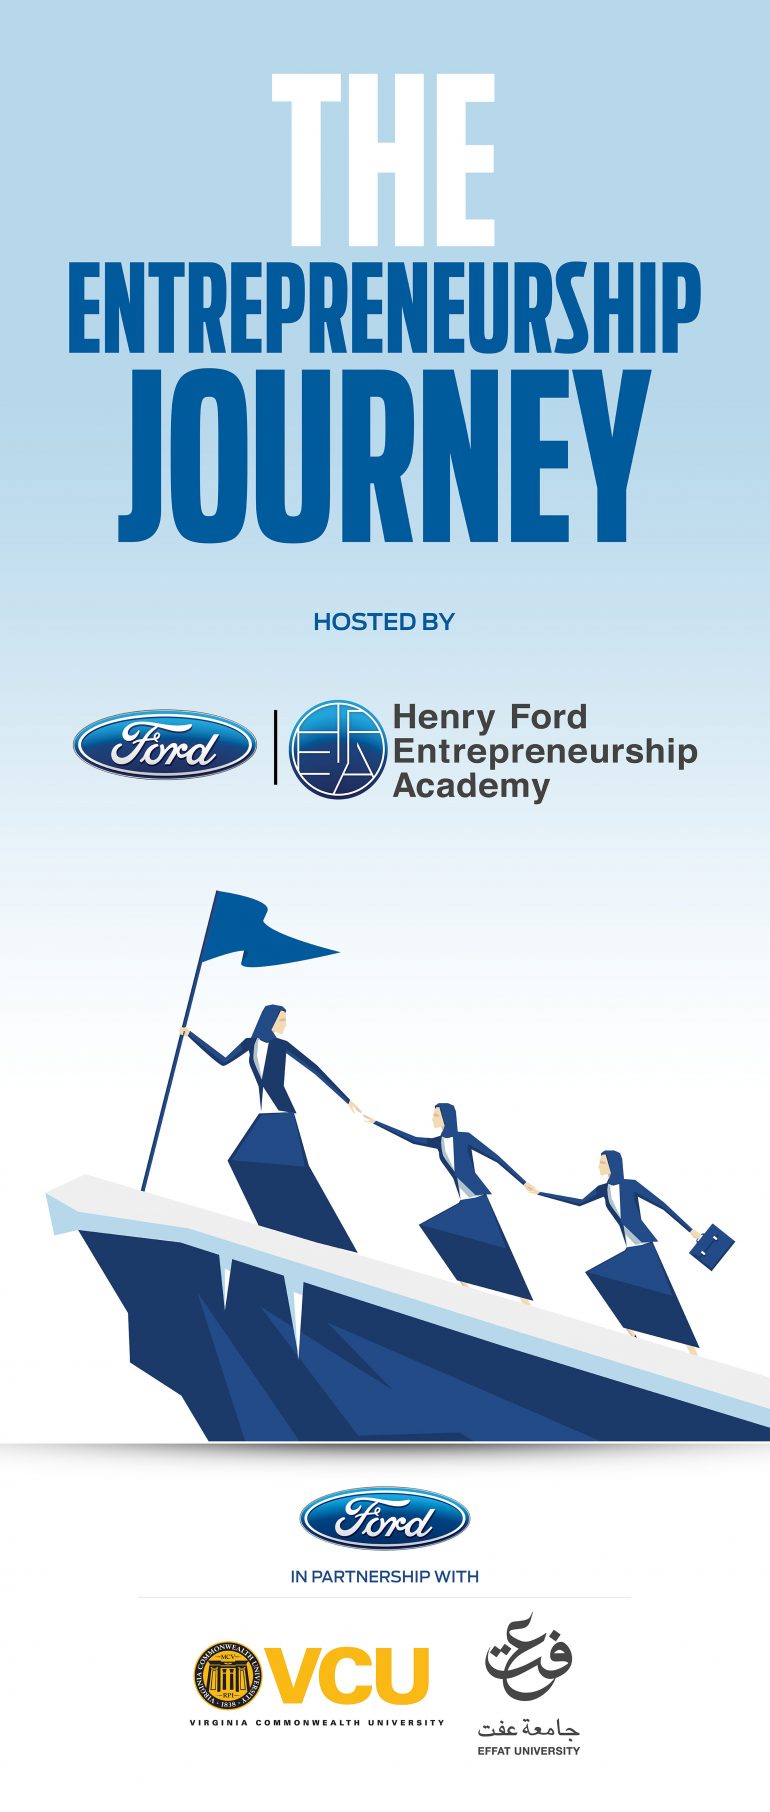 henry ford entrepreneurship academy